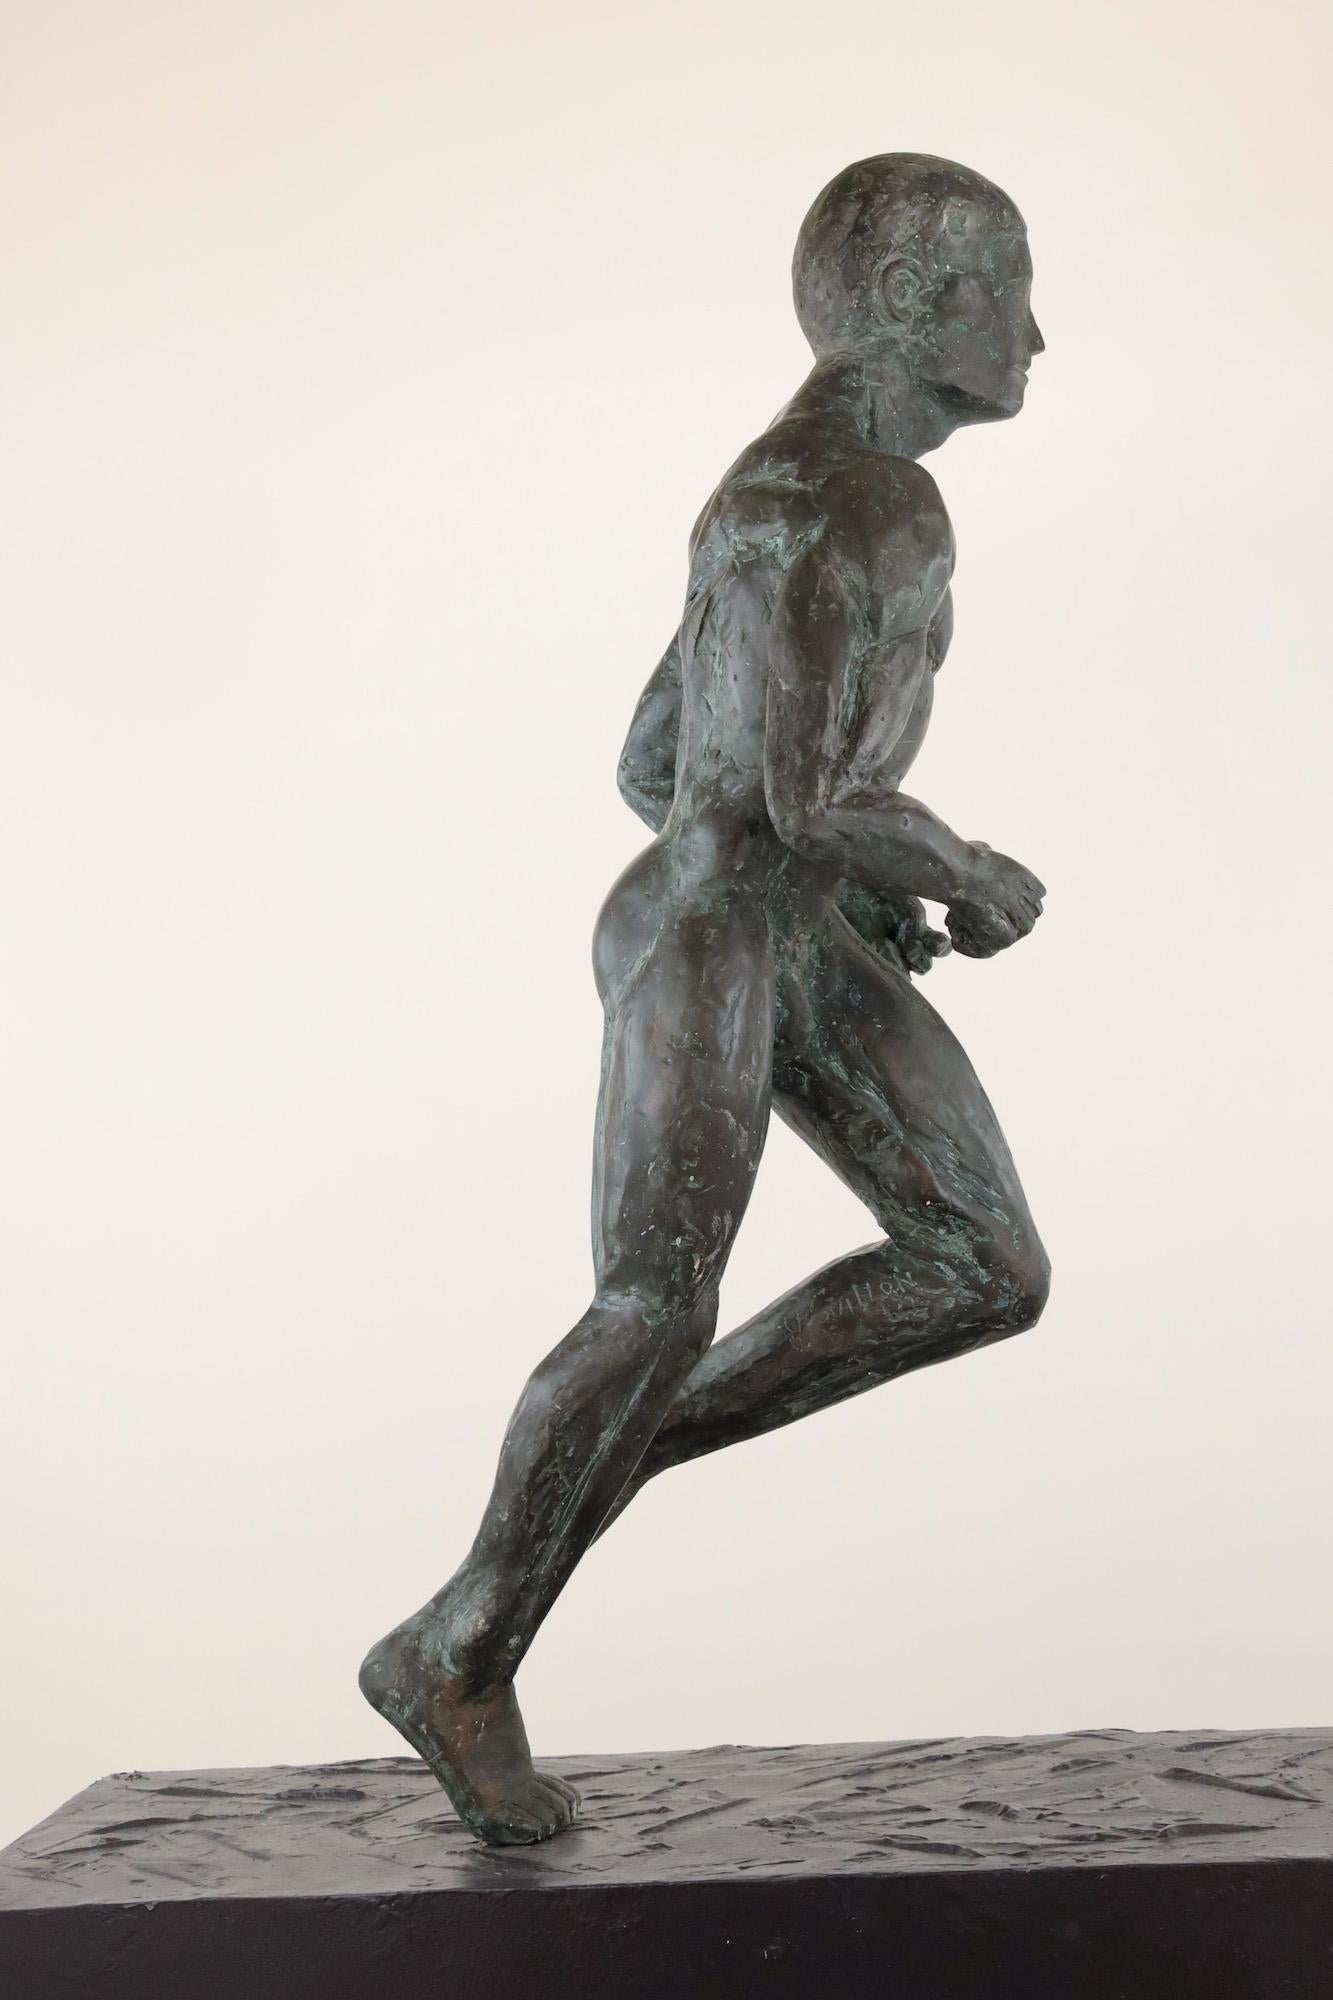 Large Runner ist eine Bronzeskulptur des zeitgenössischen Künstlers Yann Guillon mit den Maßen 120 × 60 × 80 cm (47,2 × 23,6 × 31,5 in), einschließlich Metallsockel. 
Die Skulptur ist signiert und nummeriert, gehört zu einer limitierten Auflage von